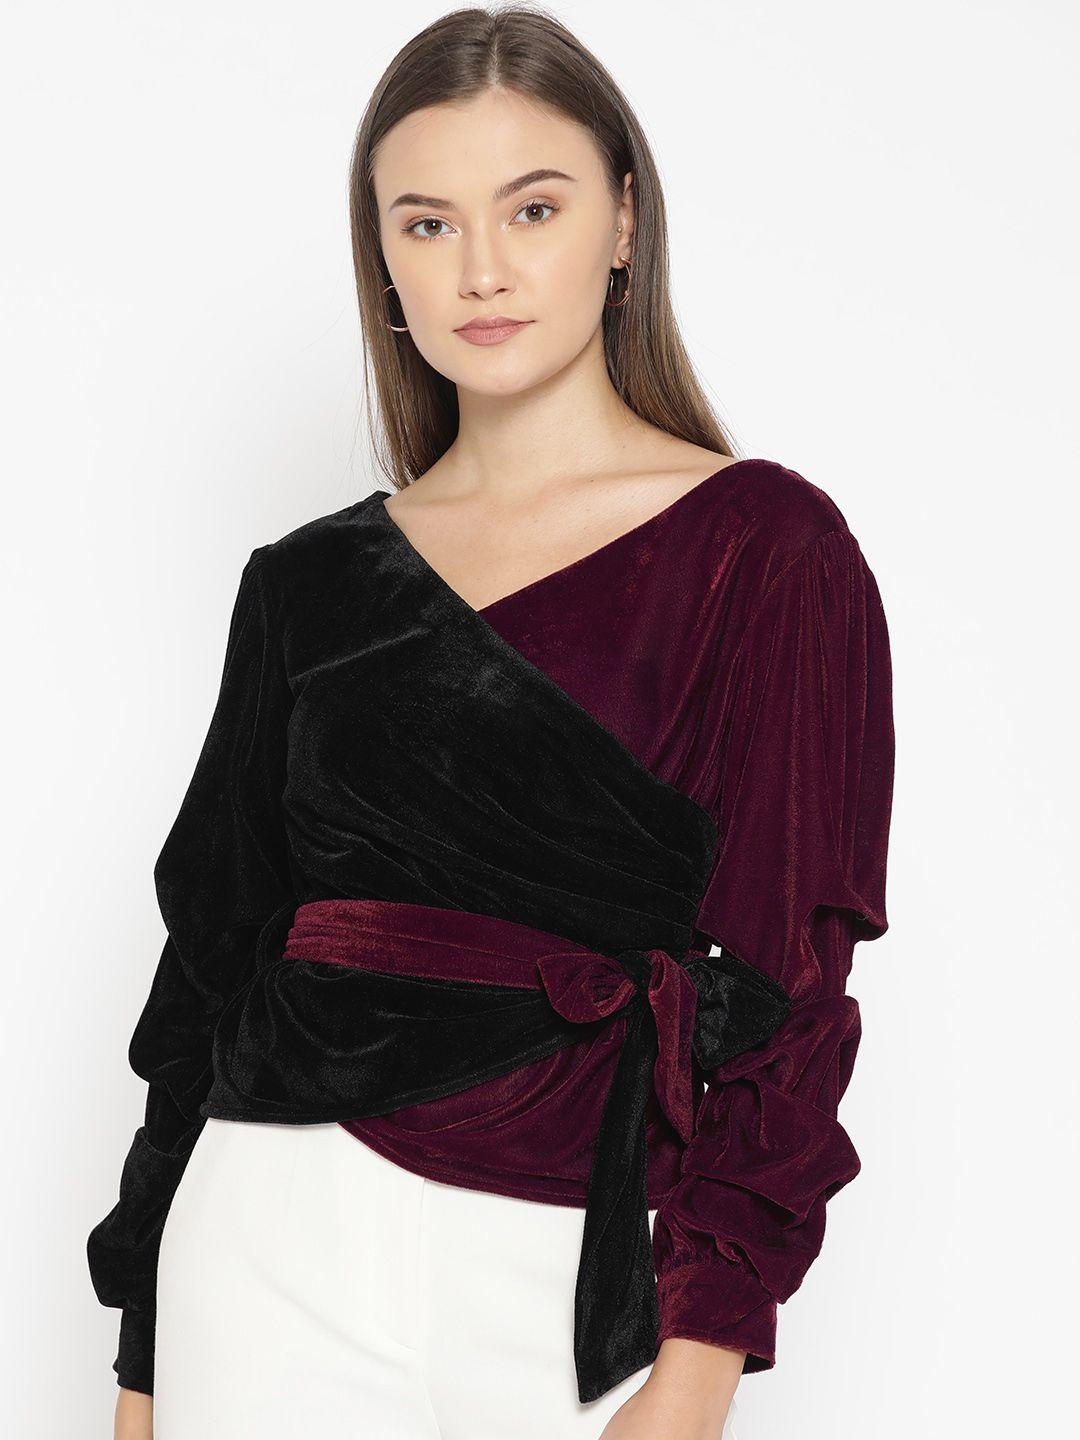 dodo & moa women black & burgundy velvet finish colourblocked wrap top